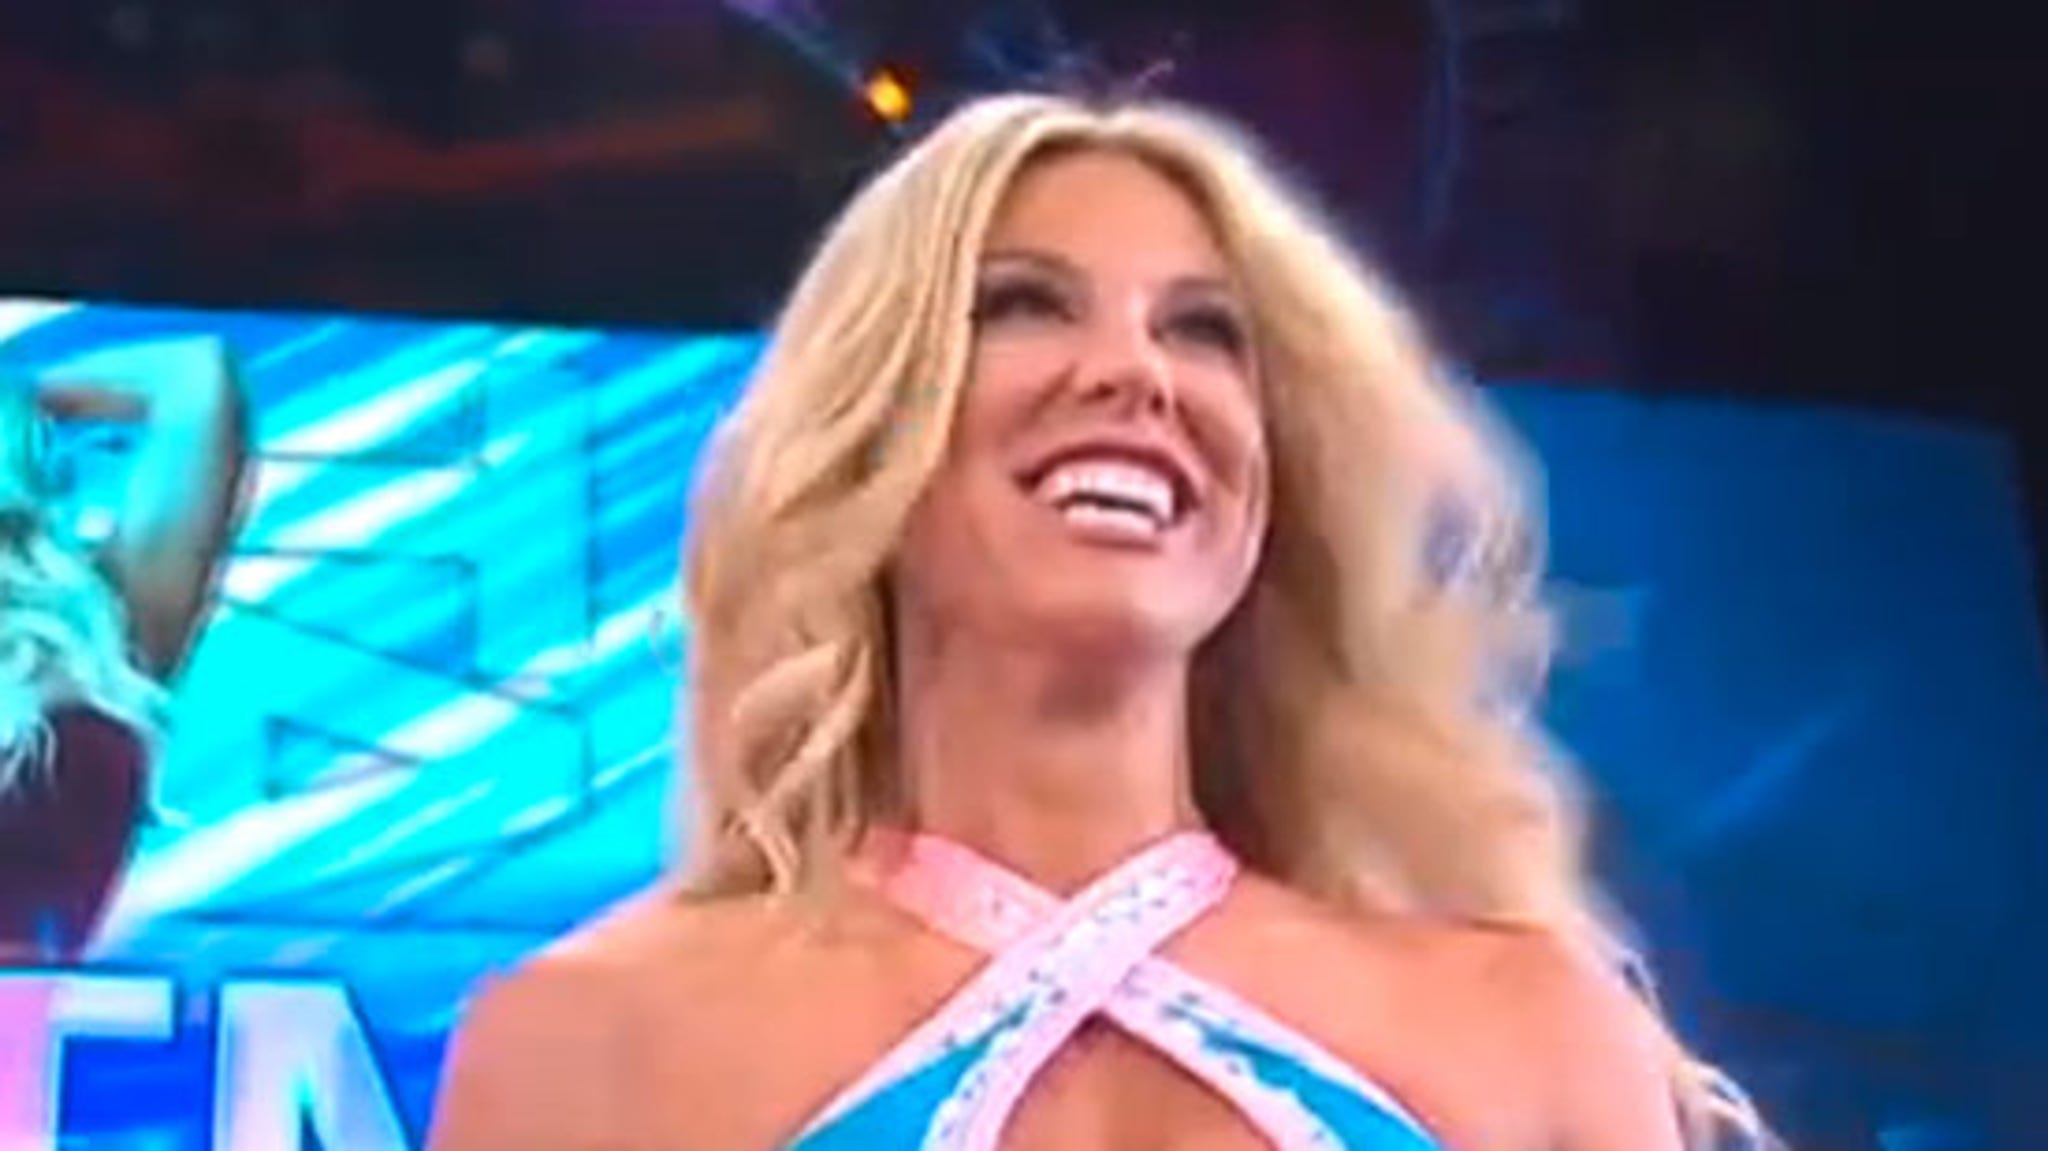 TNA Female Wrestler REAL DAMAGE After BRUTAL Match